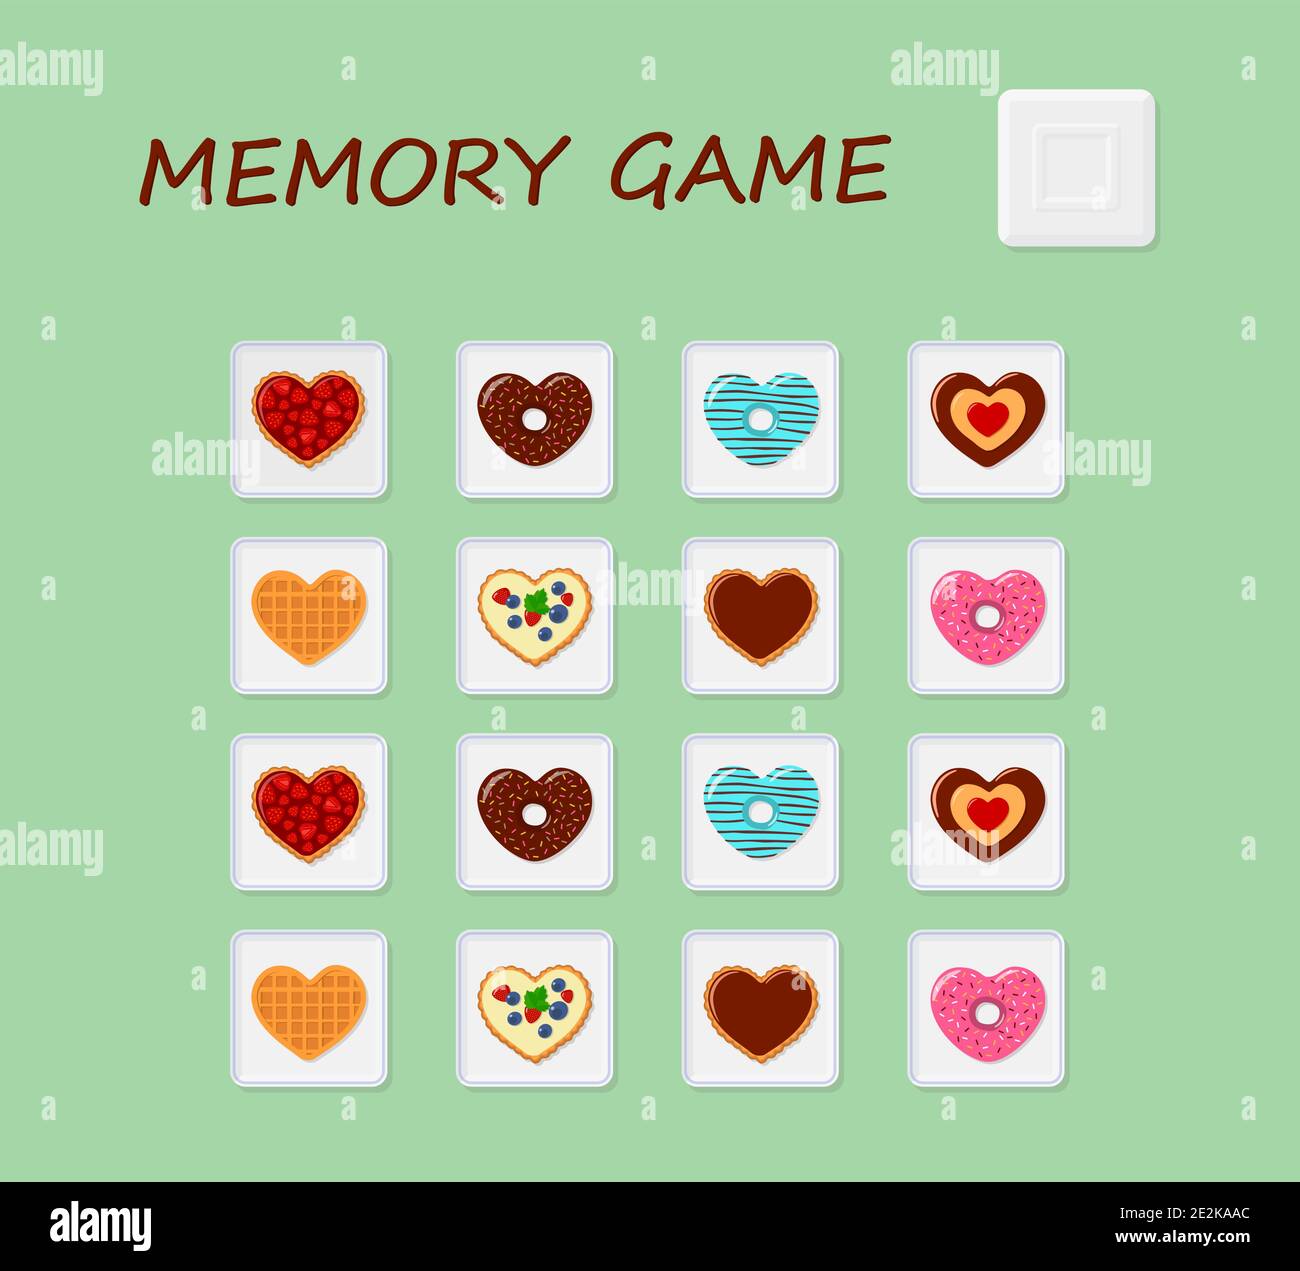 Memory-Spiel. Entwicklung Puzzle für Kinder und Erwachsene . Flacher  Cartoon-Stil. Vektorgrafik Stock-Vektorgrafik - Alamy